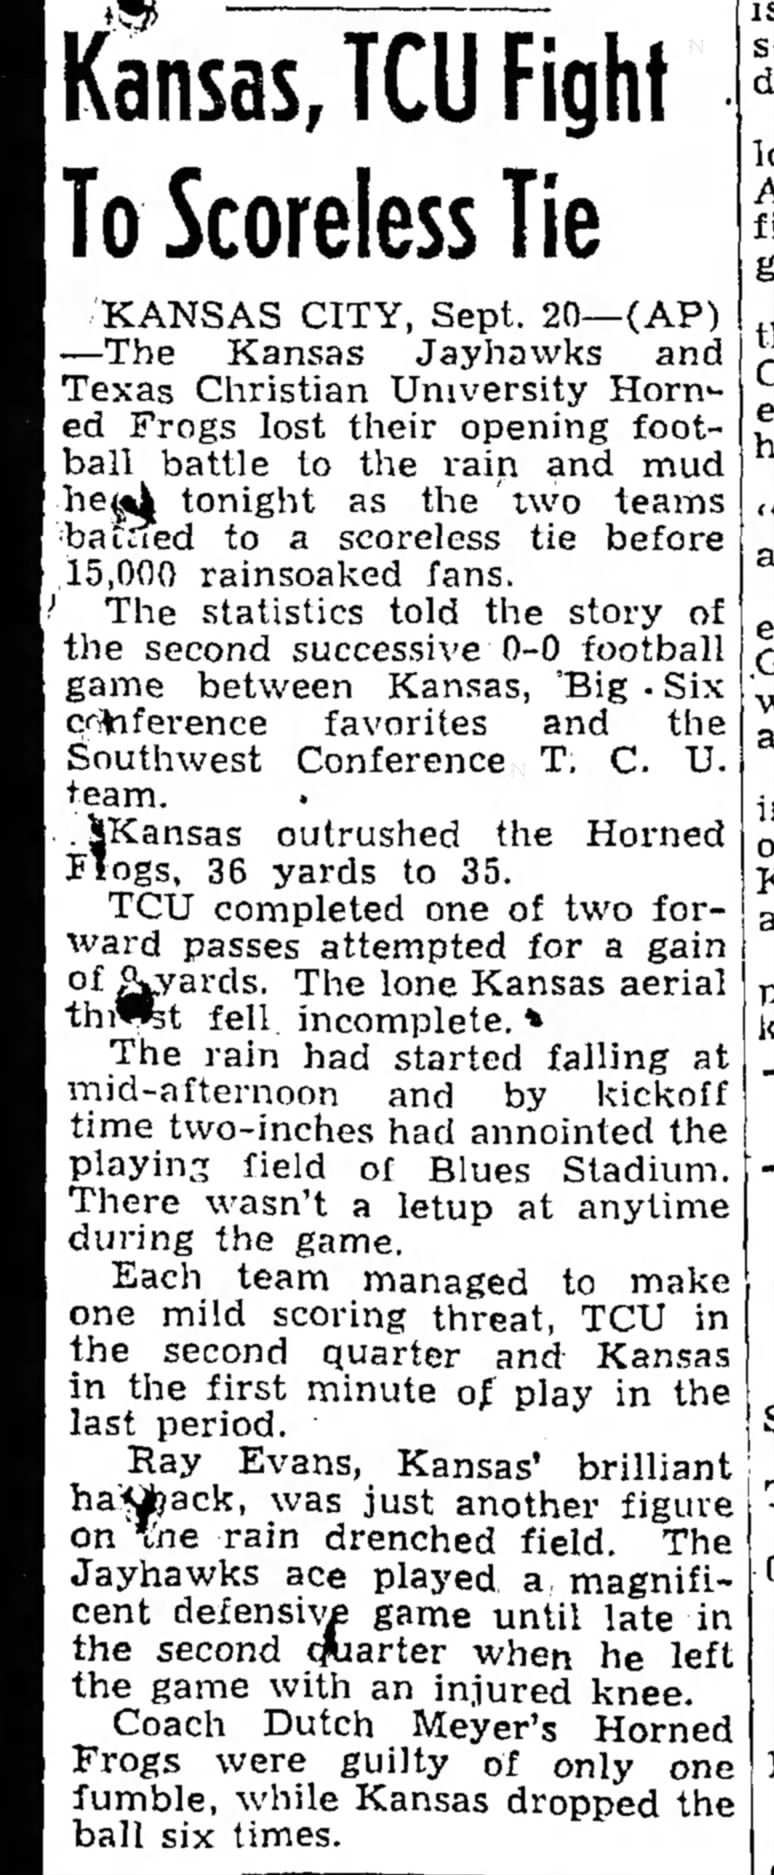 Kansas, TCU Fight To Scoreless Tie